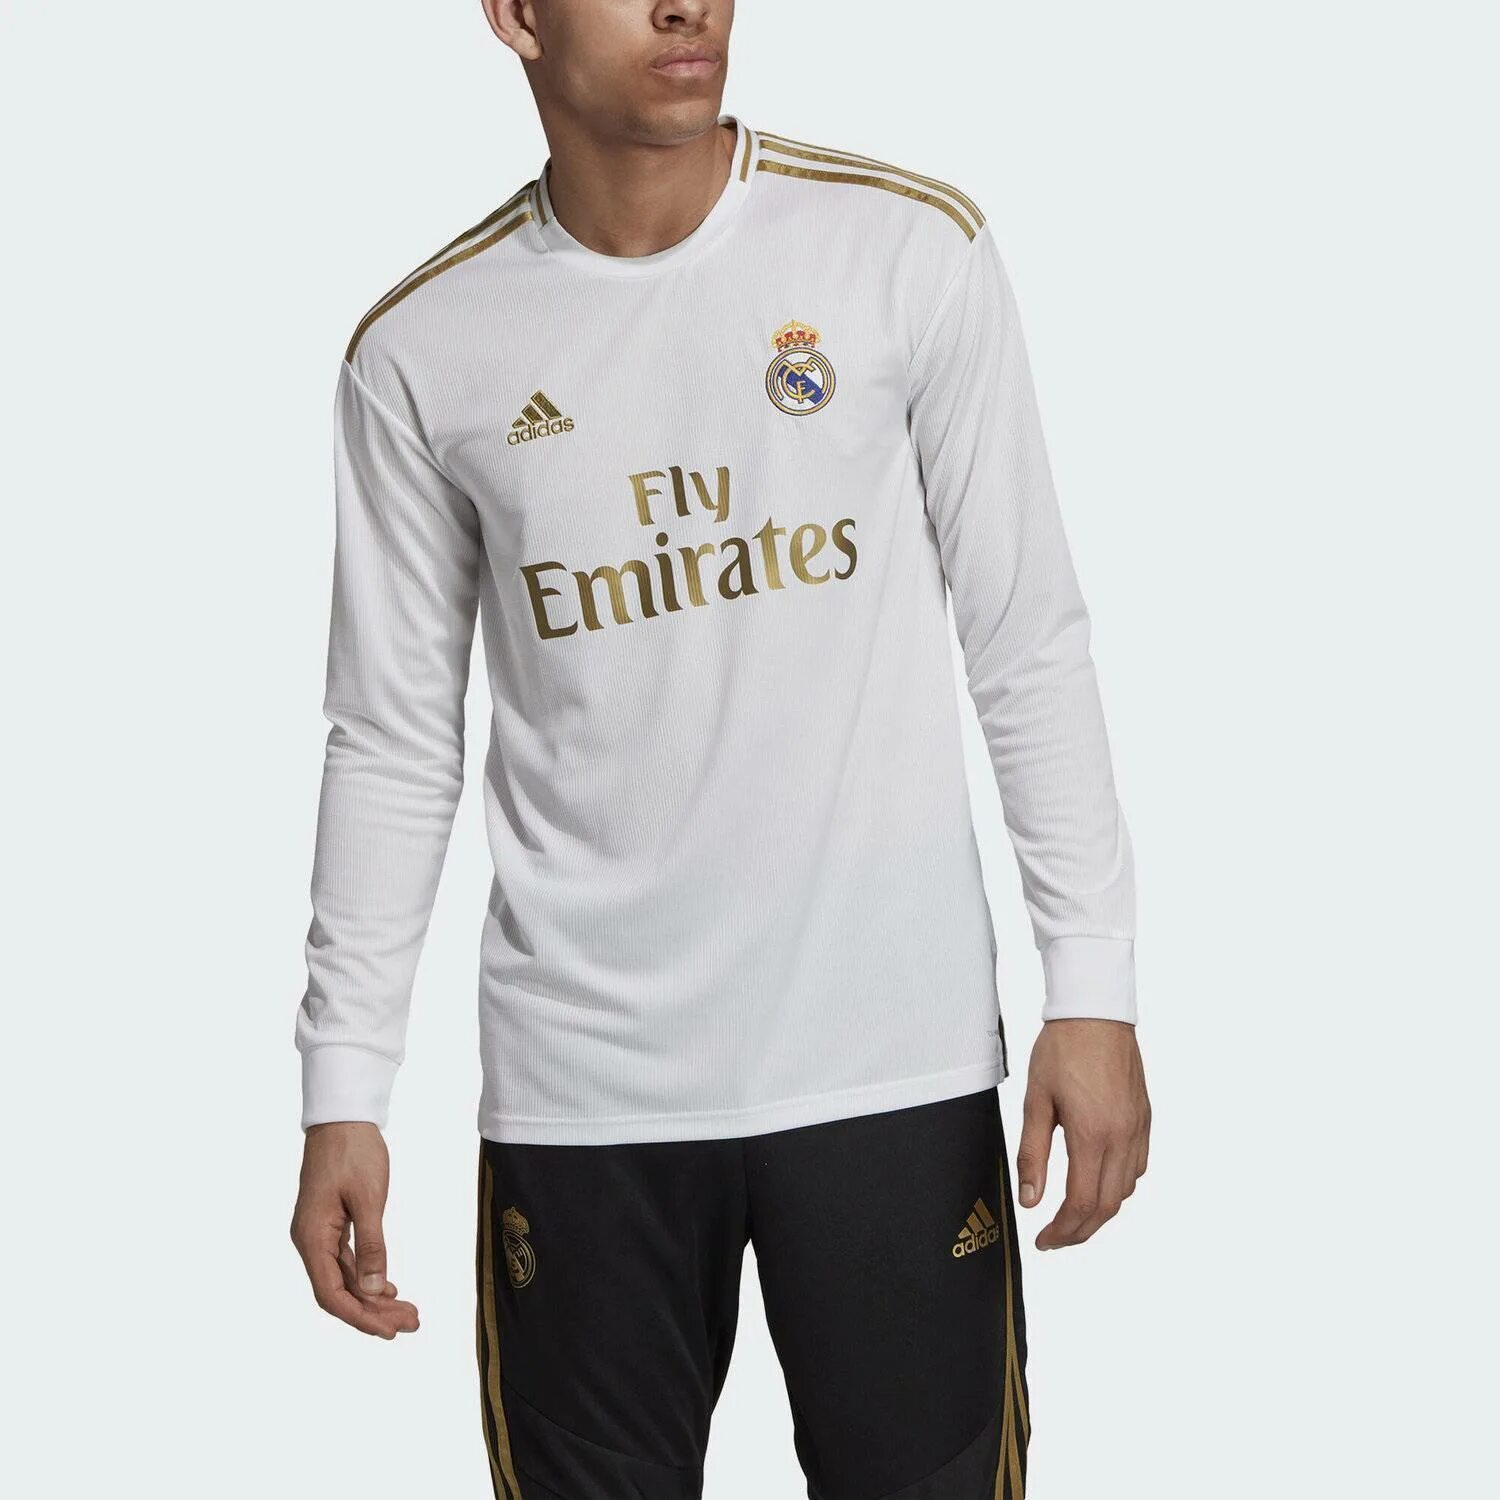 Купить футболку реал. Лонгслив мужской Реал Мадрид adidas. Футболка Реал Мадрид адидас. Форма Реал Мадрид с длинным рукавом. Игровая футболка Реал Мадрид.